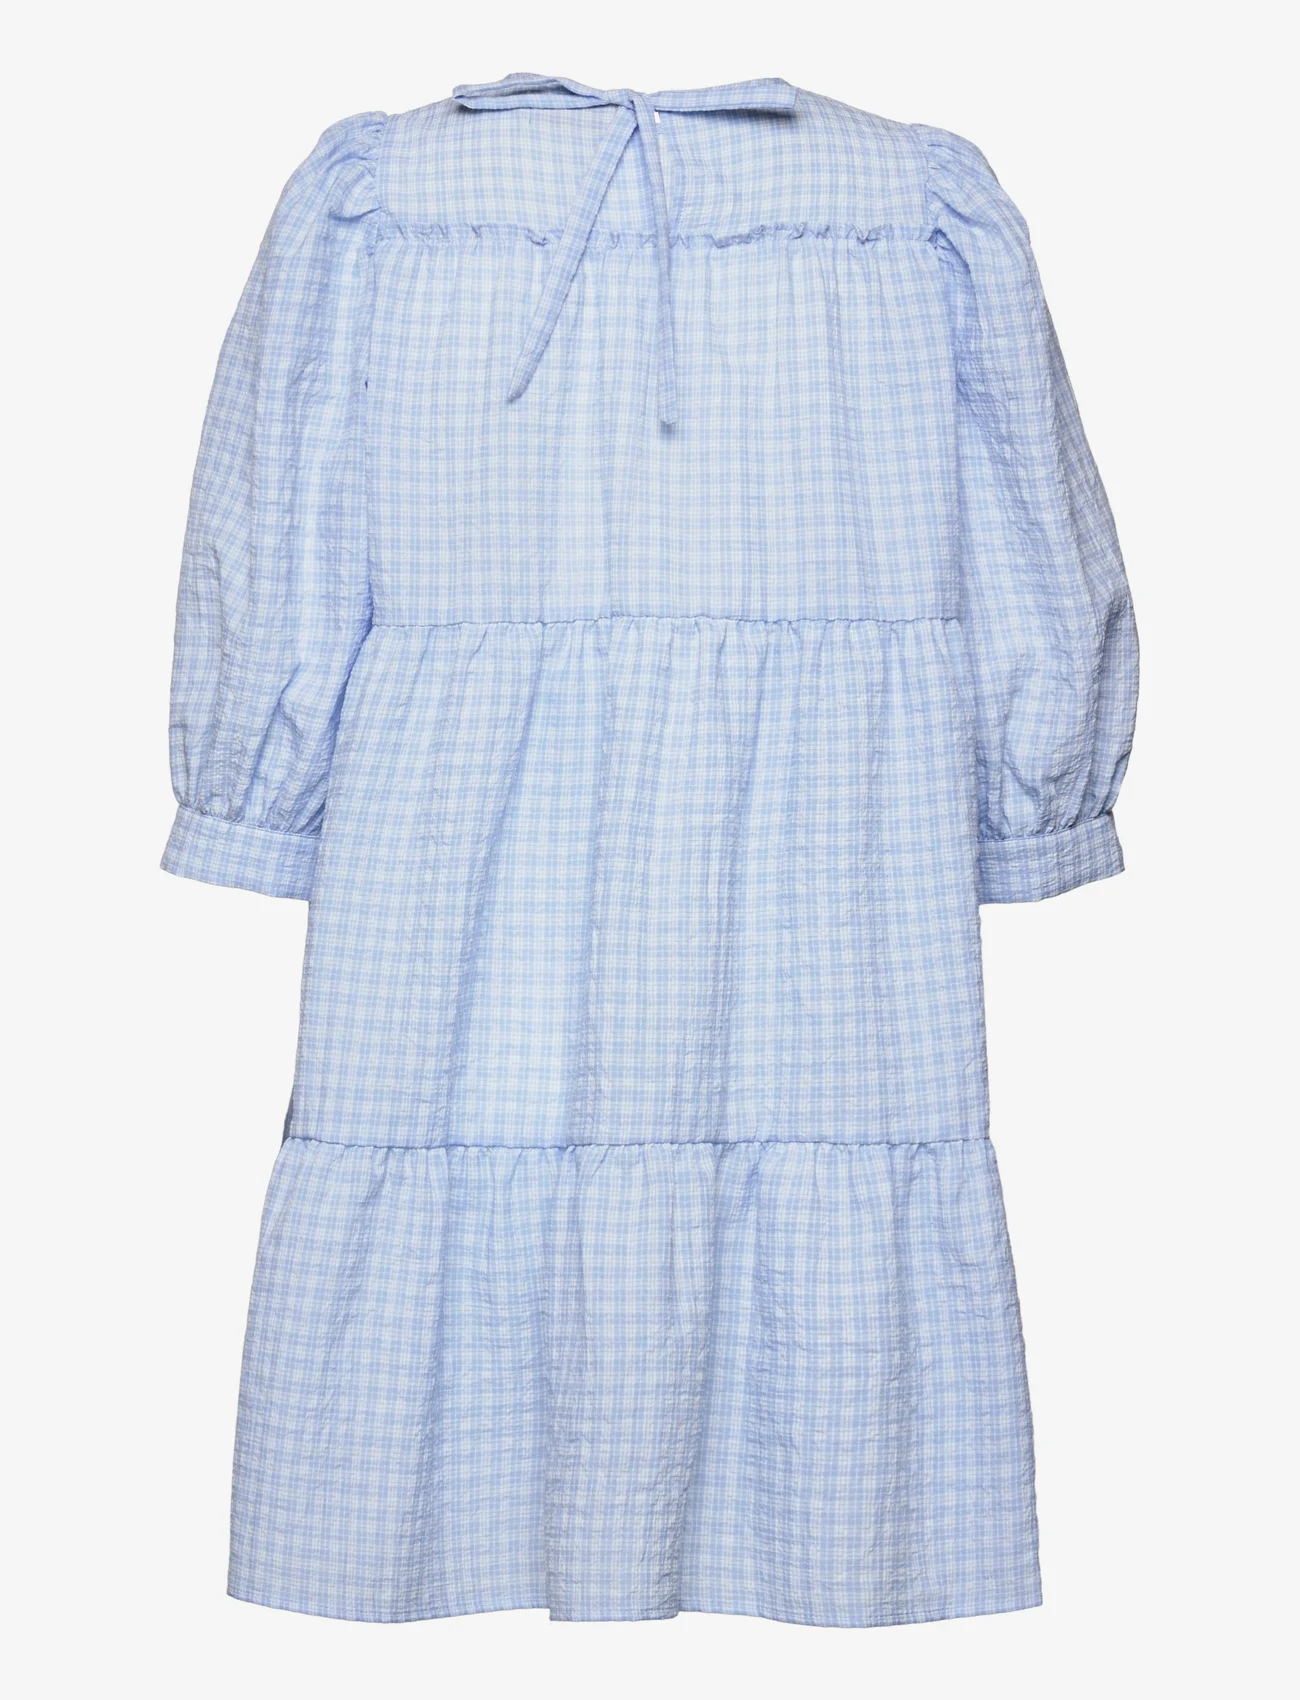 Minus - Rowen kjole - kurze kleider - blue checked - 1